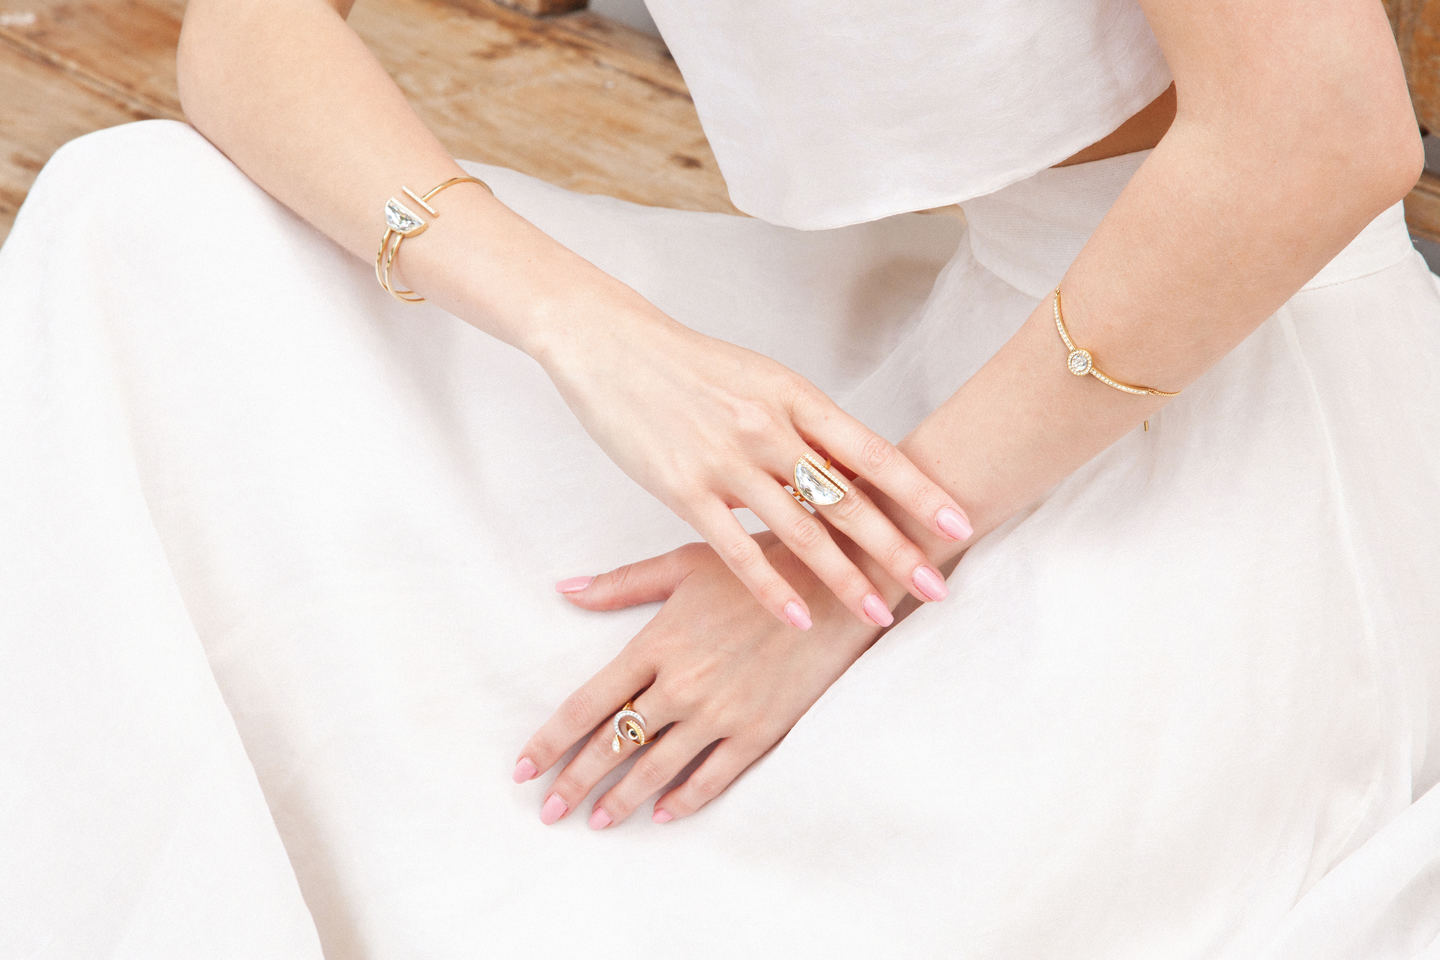 Στο αριστερό χέρι βραχιόλι Gently, δαχτυλίδι Gipsy και στο δεξί χέρι βραχιόλι και δαχτυλίδι Glow.